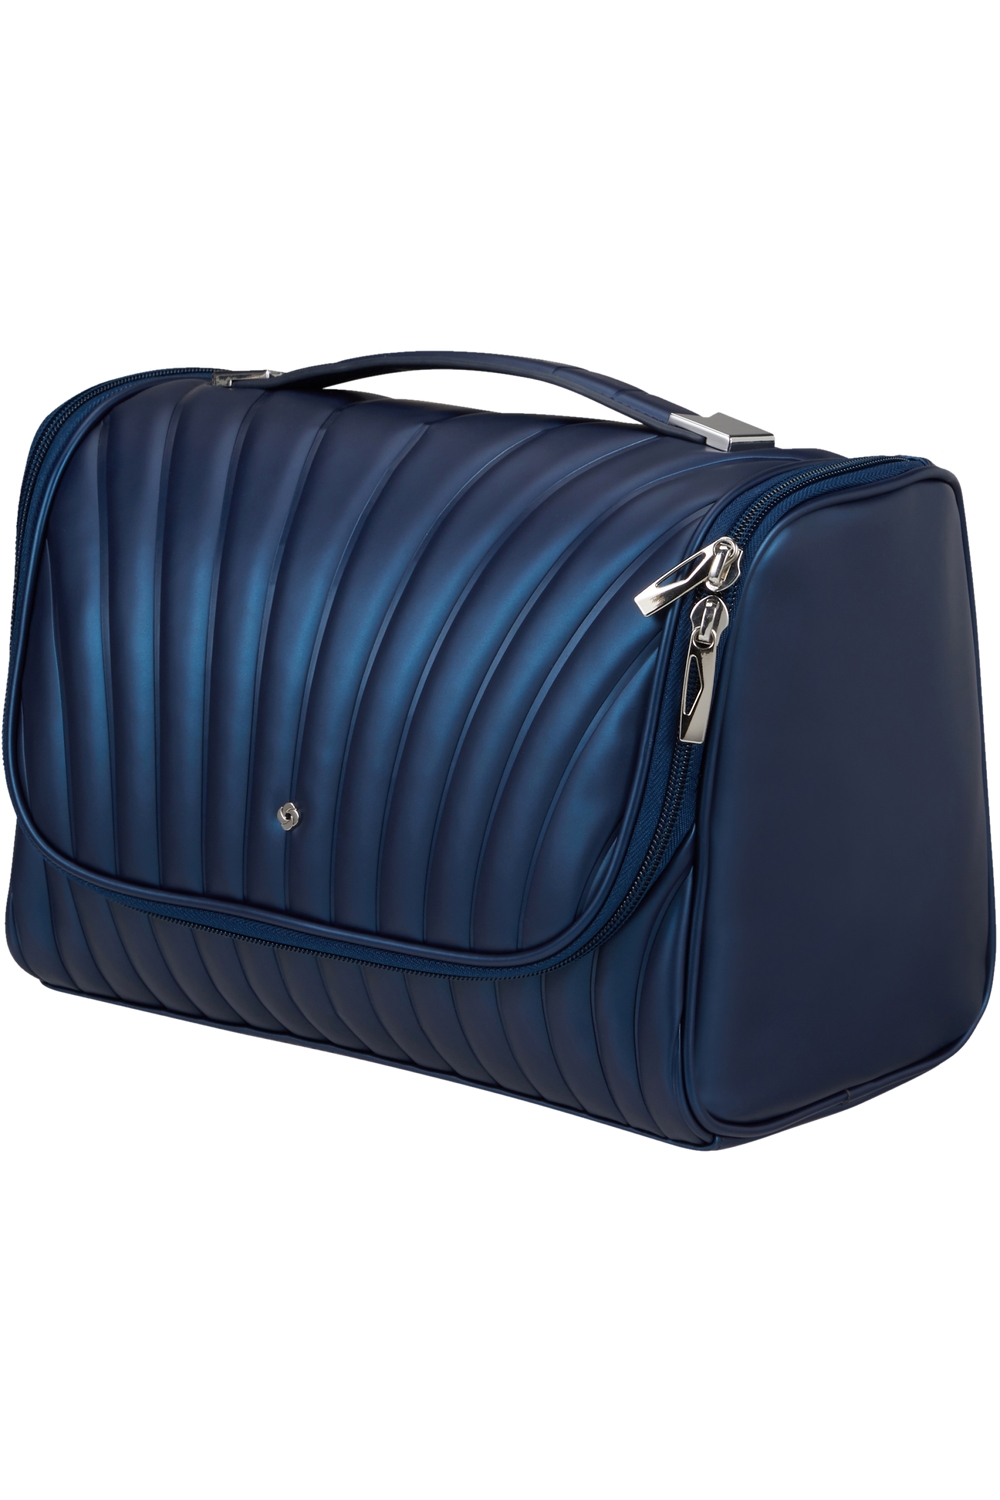 SAMSONITE Kosmetická taška C-Lite Midnight Blue, 26 x 15 x 18 (142676/1549)